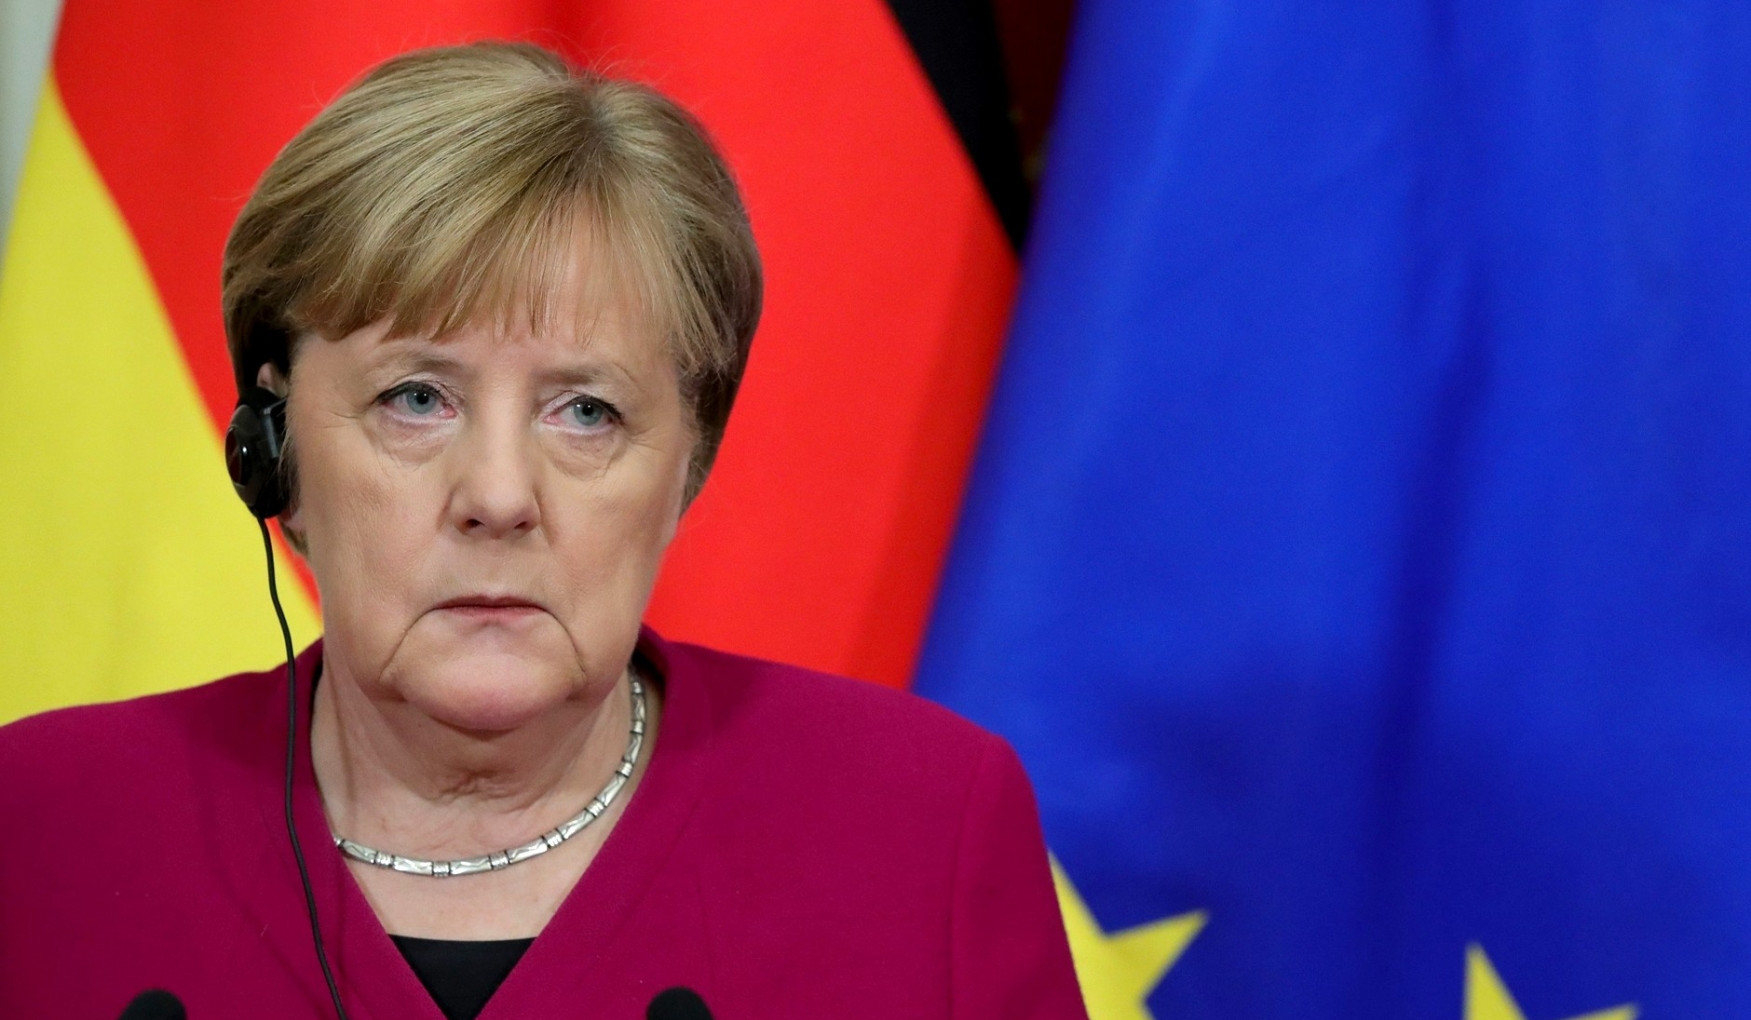 Президент ФРГ попросил Меркель исполнять обязанности канцлера до назначения преемника